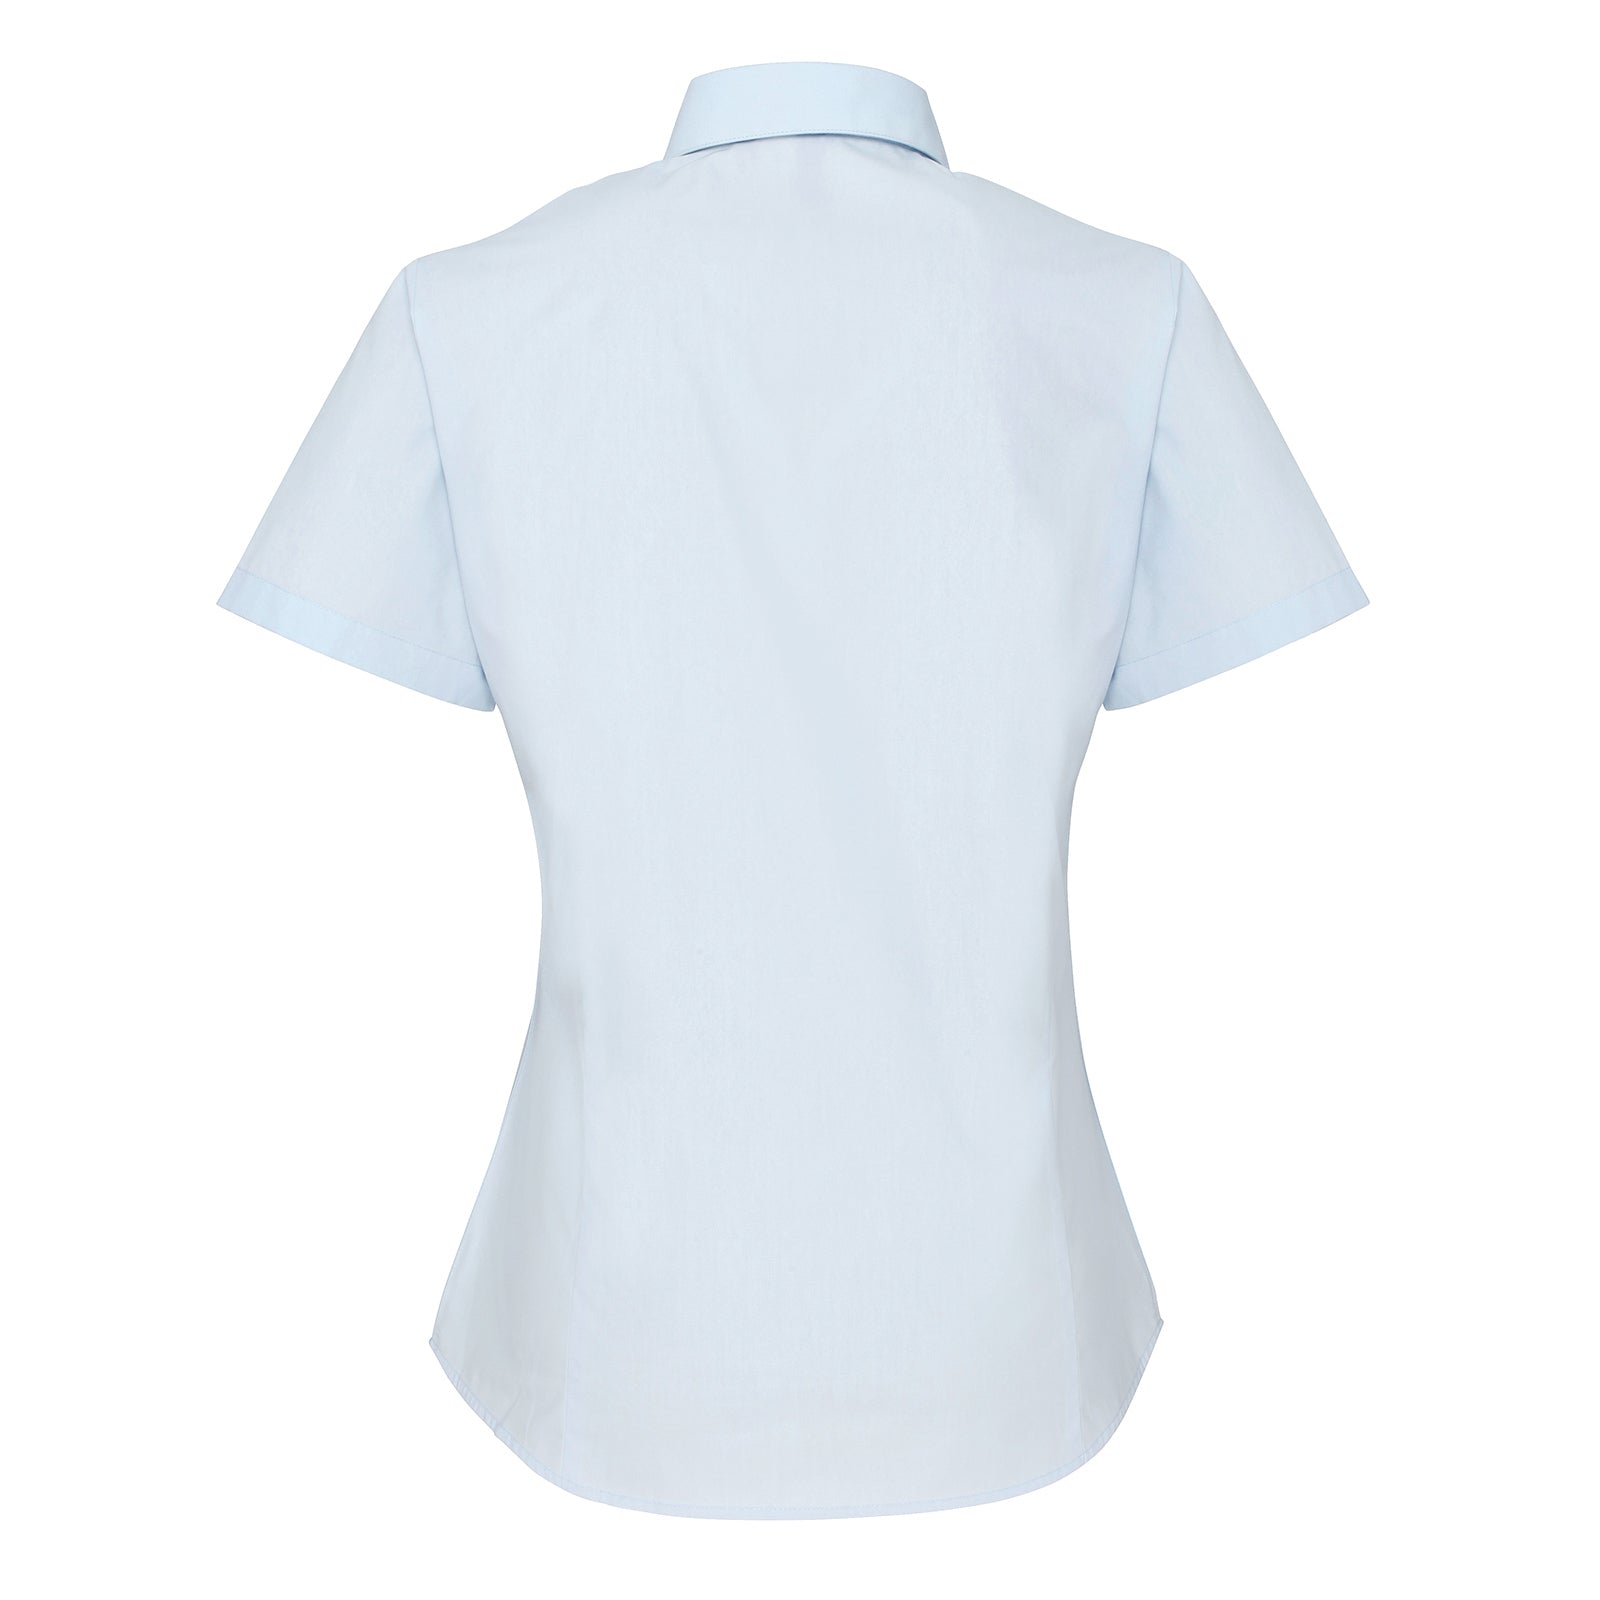 Premier Supreme Short Sleeve Poplin Shirt - Shirtworks